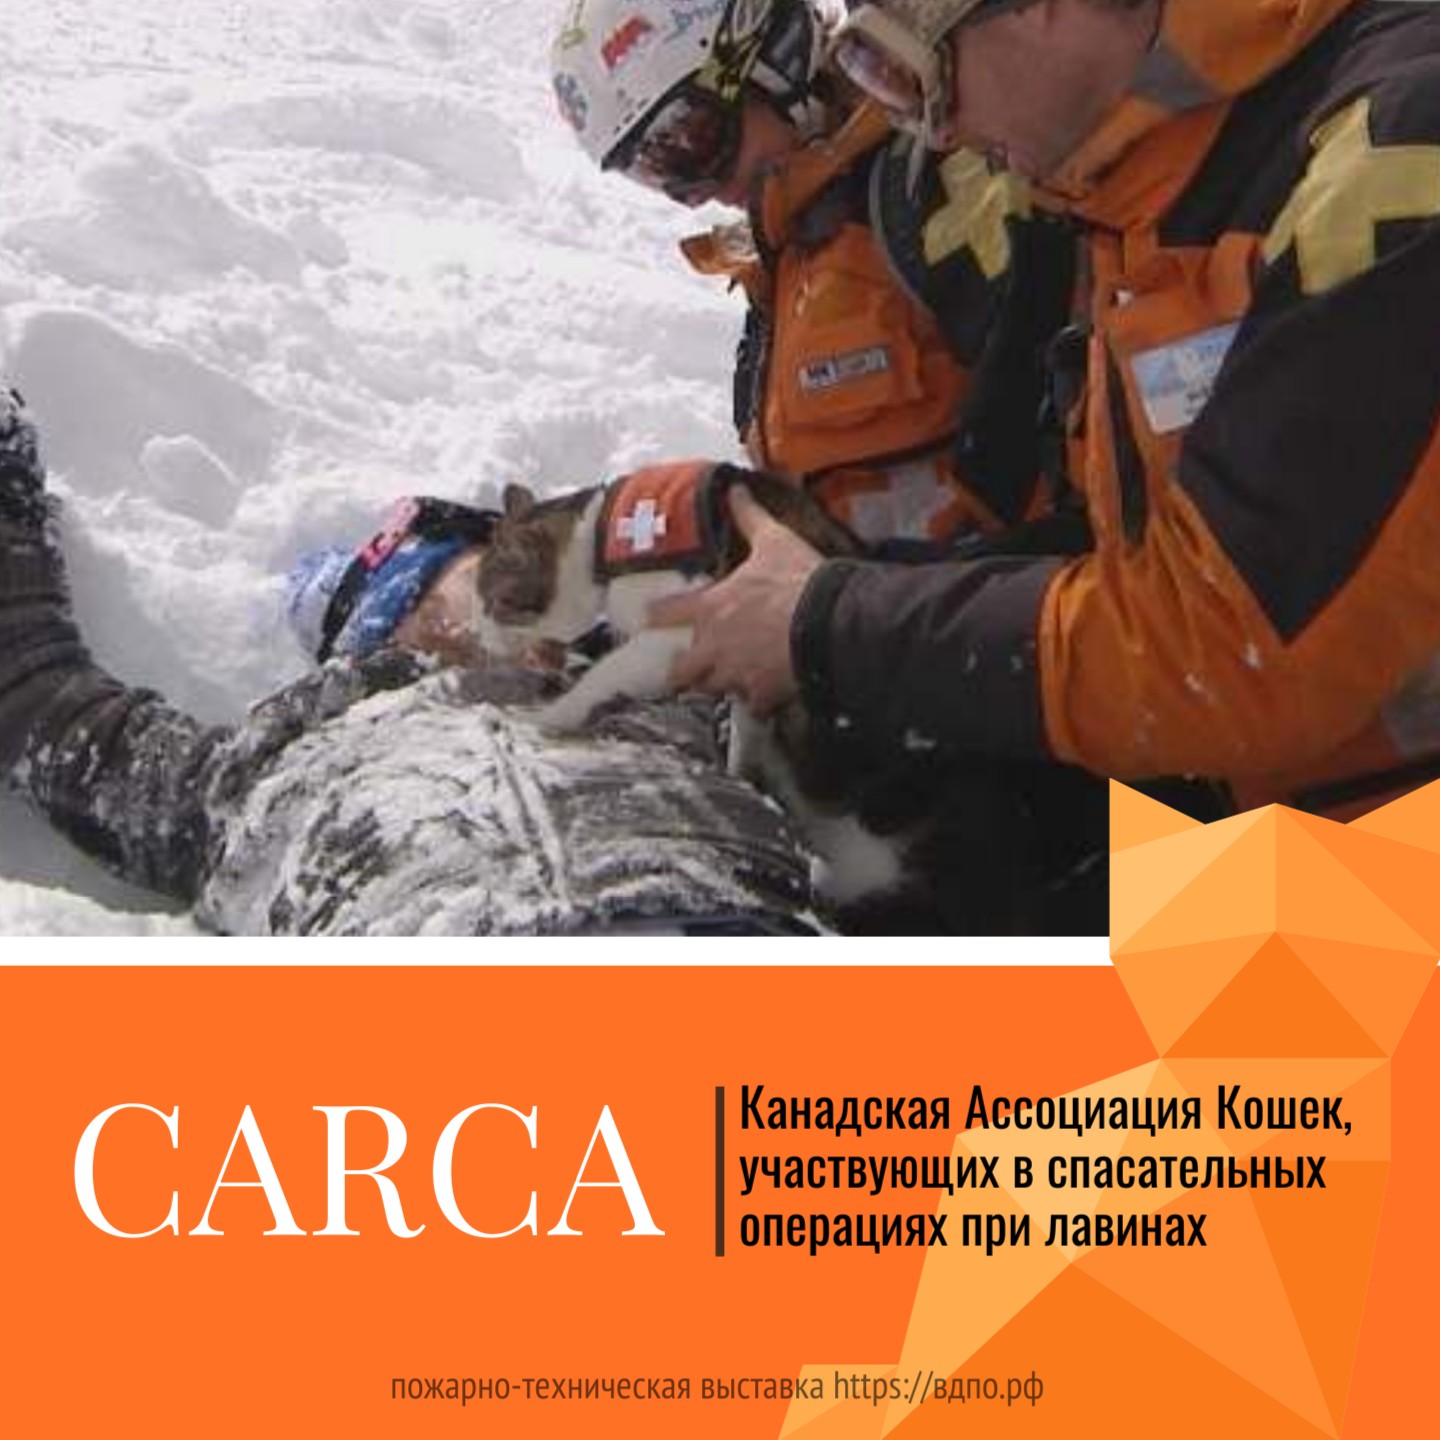 CARCA – Канадская Ассоциация Кошек, участвующих в спасательных операциях при лавинах.  Это небольшая группа добровольцев, занимающаяся обучением и использованием домашних кошек в......